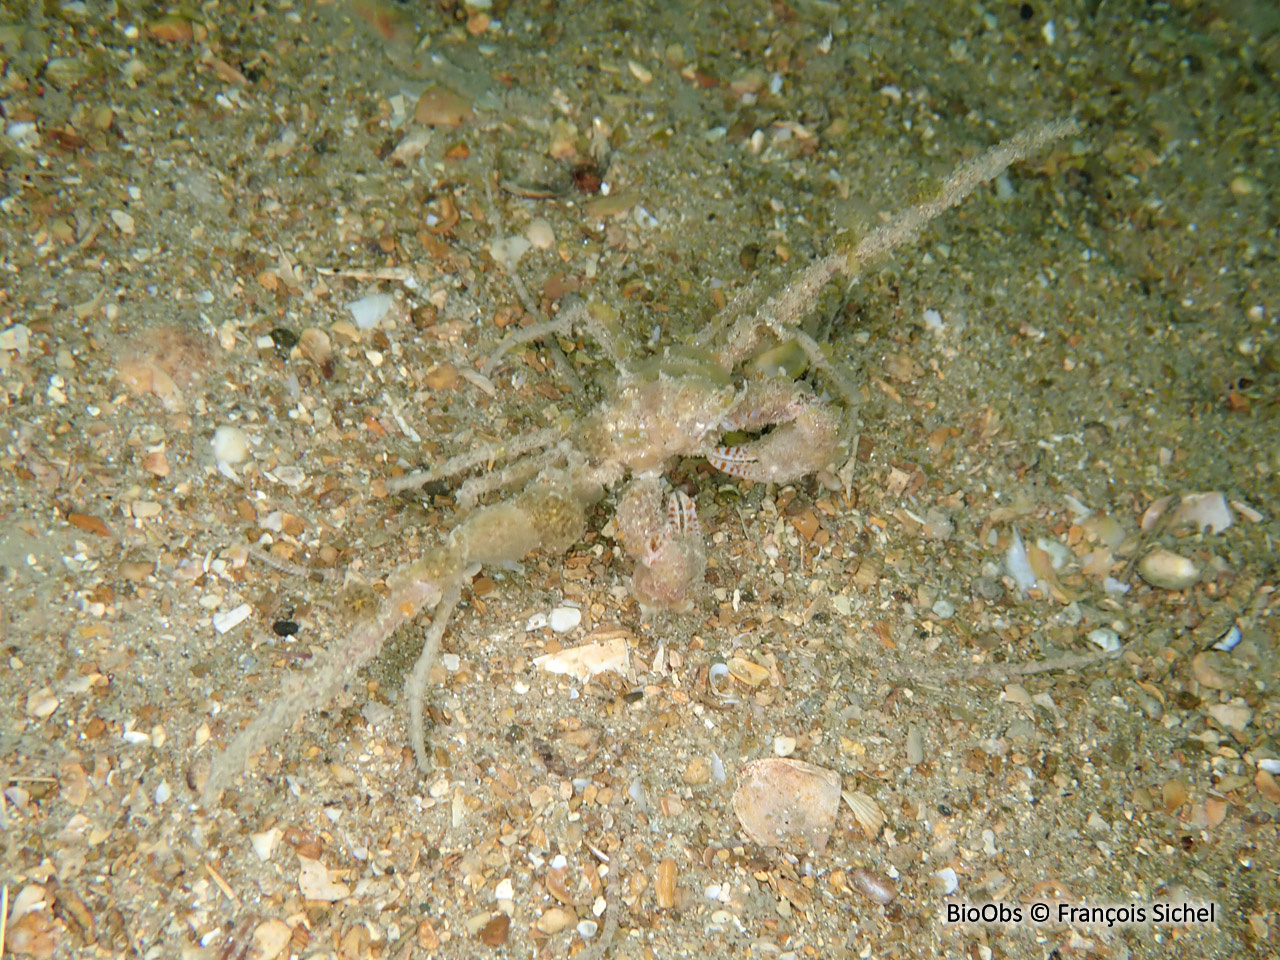 Crabe-araignée scorpion - Inachus dorsettensis - François Sichel - BioObs